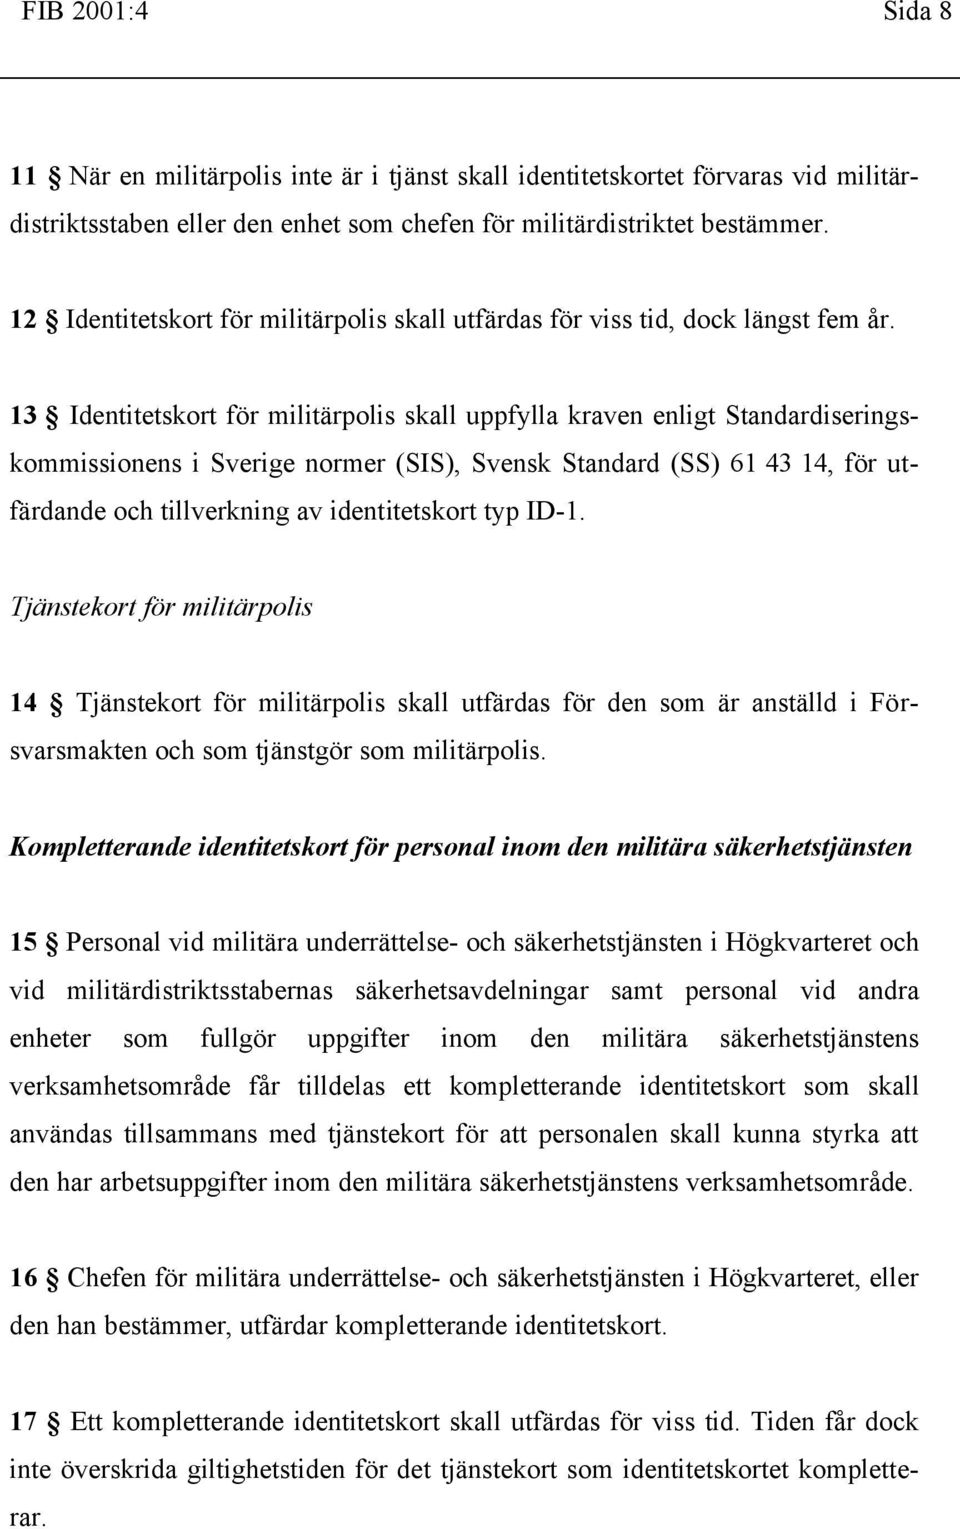 13 Identitetskort för militärpolis skall uppfylla kraven enligt Standardiseringskommissionens i Sverige normer (SIS), Svensk Standard (SS) 61 43 14, för utfärdande och tillverkning av identitetskort